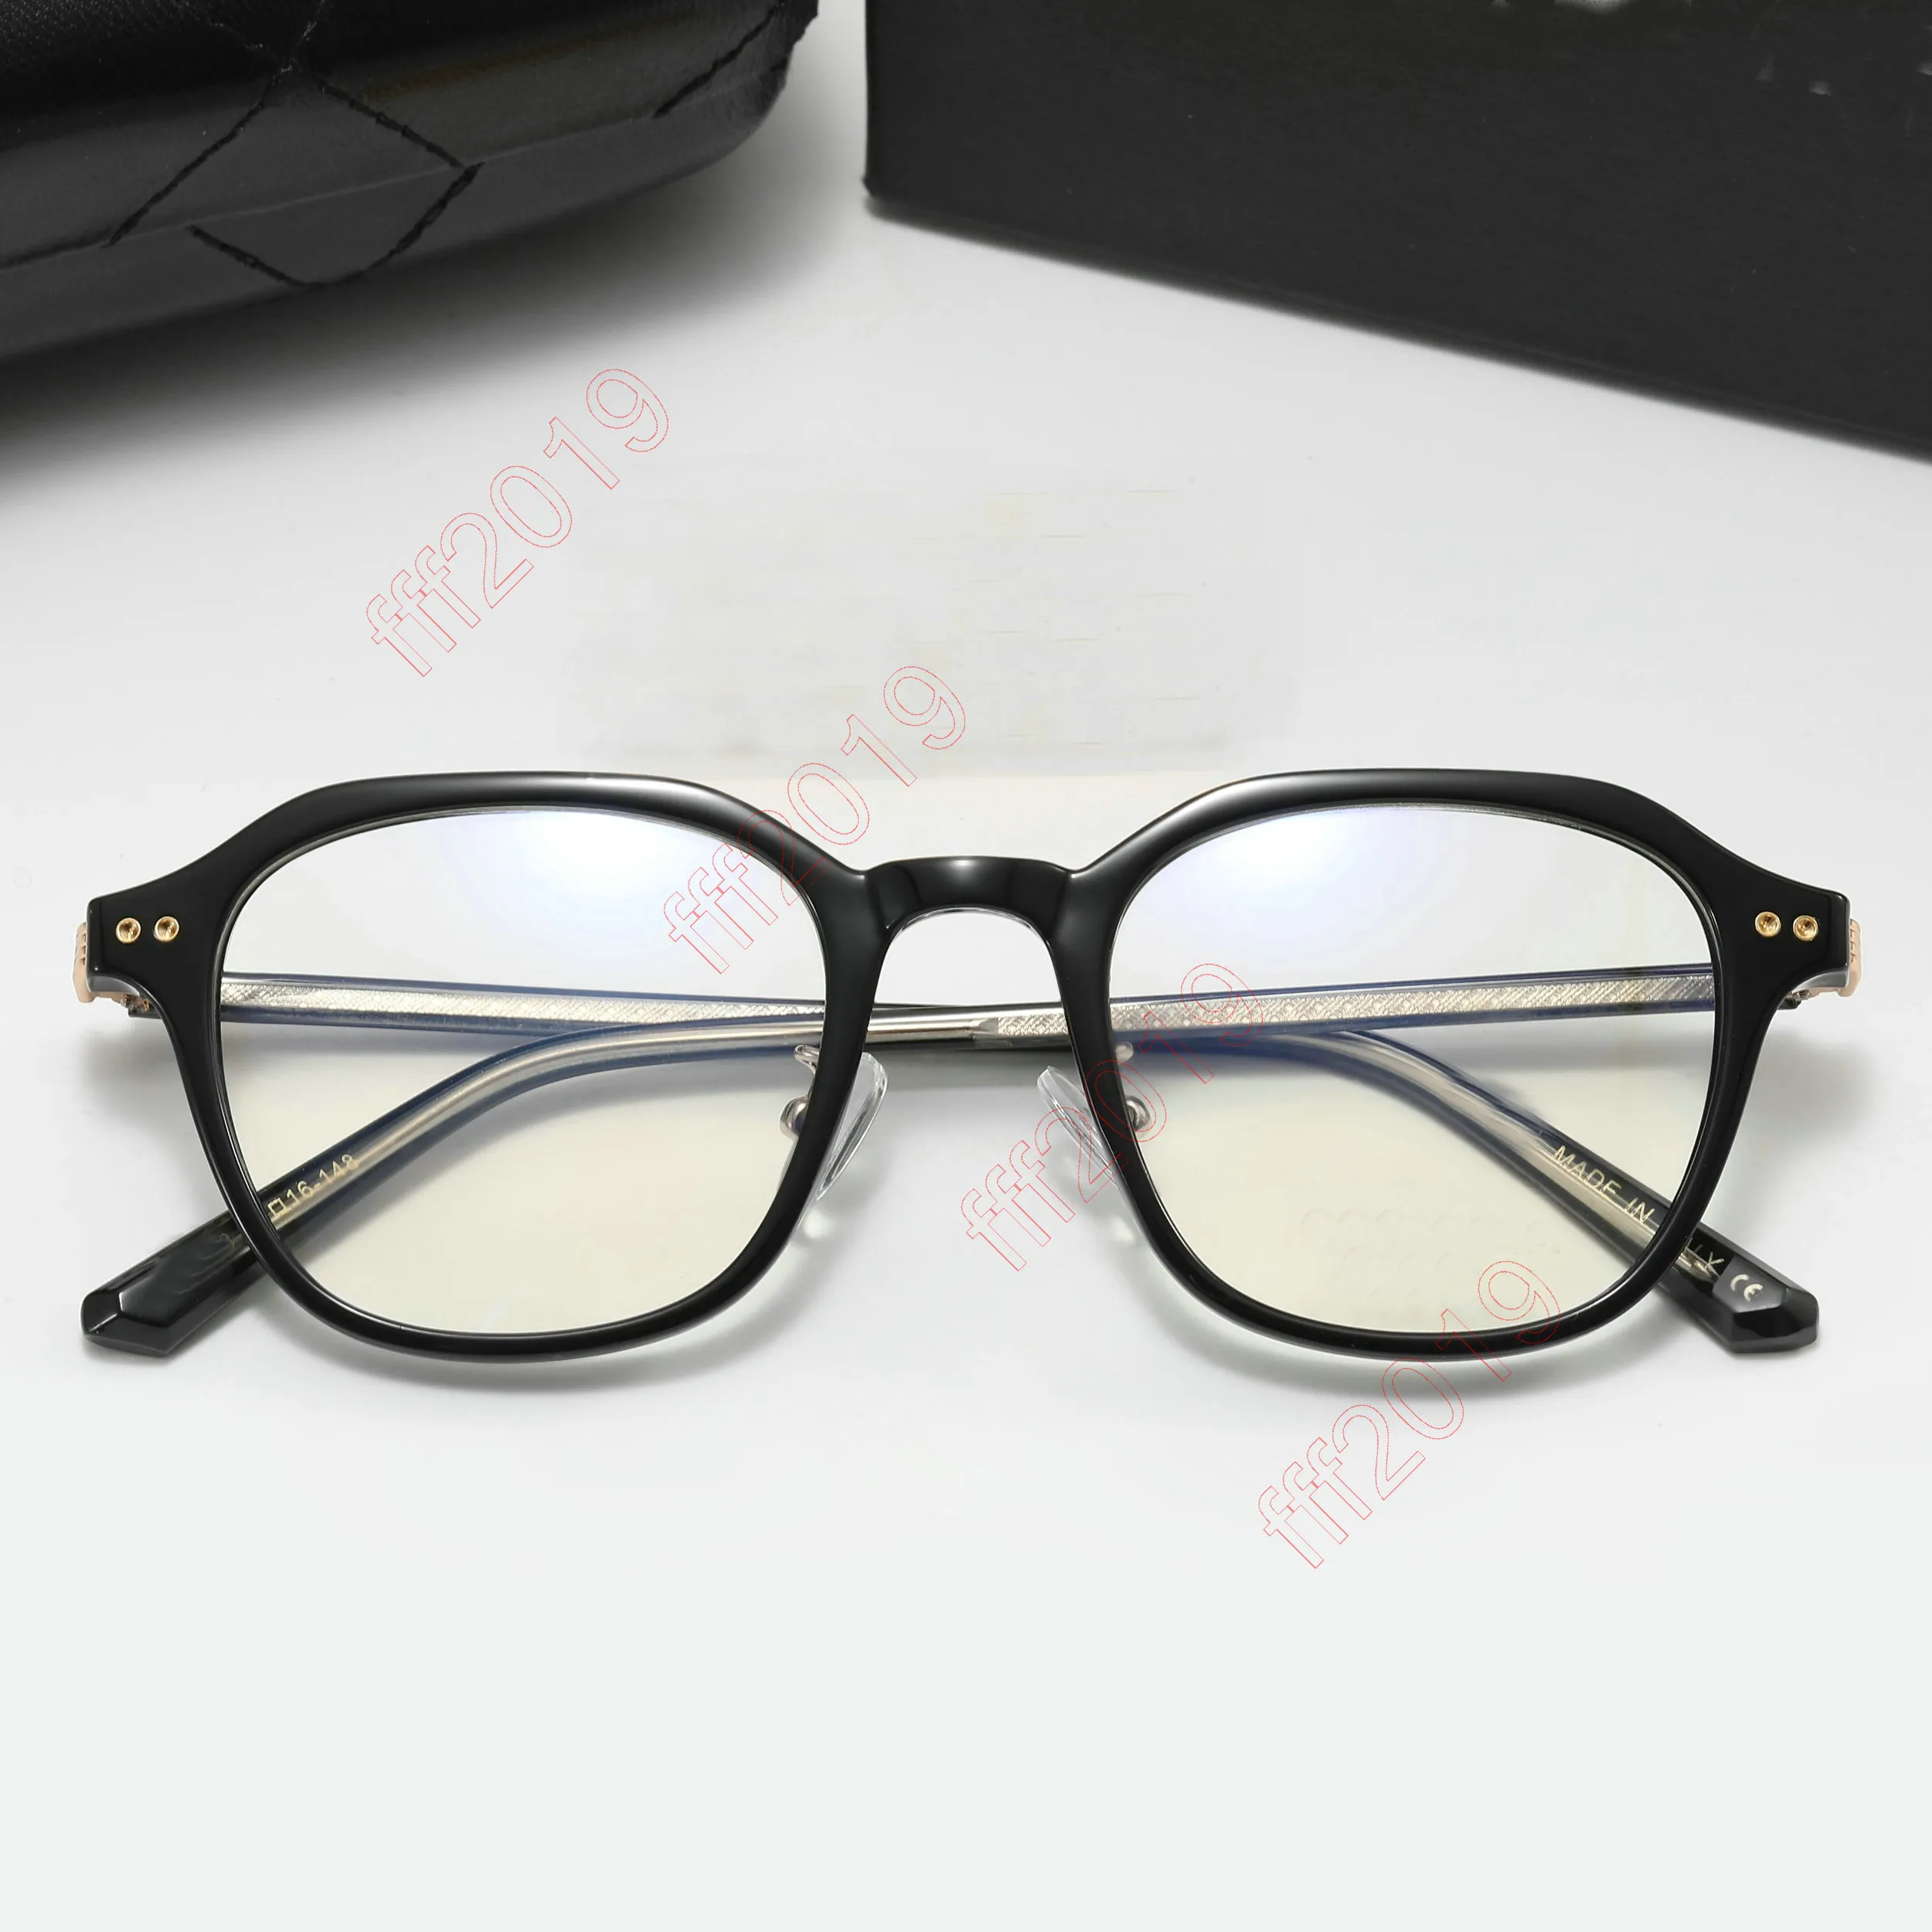 2022 Marca de moda Gafas de sol Gafas ópticas redondas Mujeres Hombres Claro Anti Luz Azul Bloqueo de gafas Marco Prescripción Transparen264o